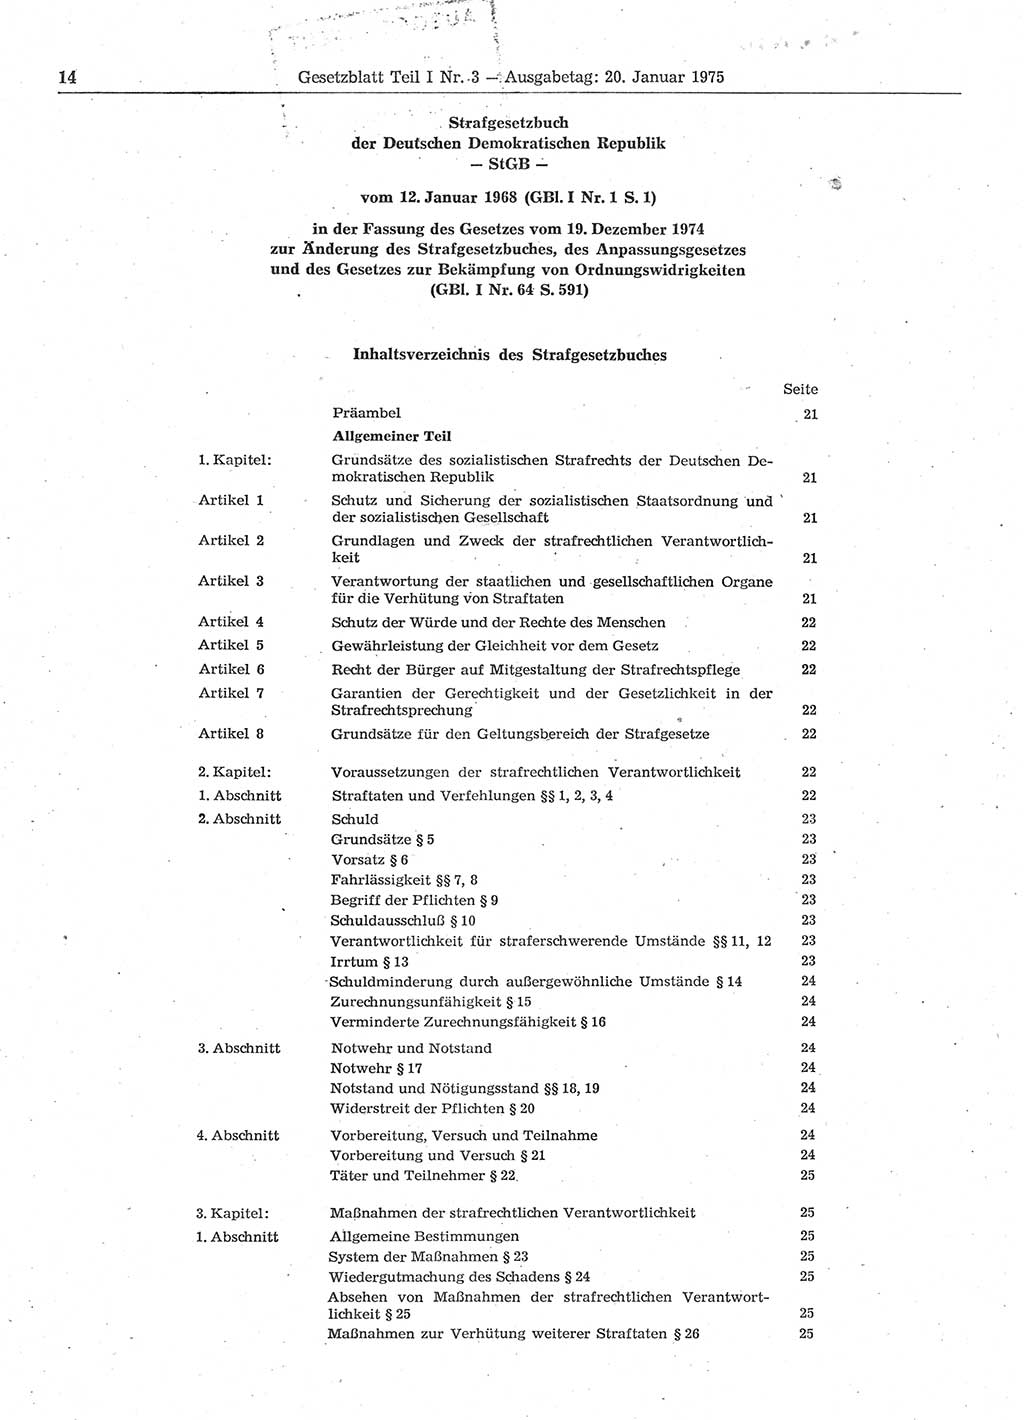 Gesetzblatt (GBl.) der Deutschen Demokratischen Republik (DDR) Teil Ⅰ 1975, Seite 14 (GBl. DDR Ⅰ 1975, S. 14)